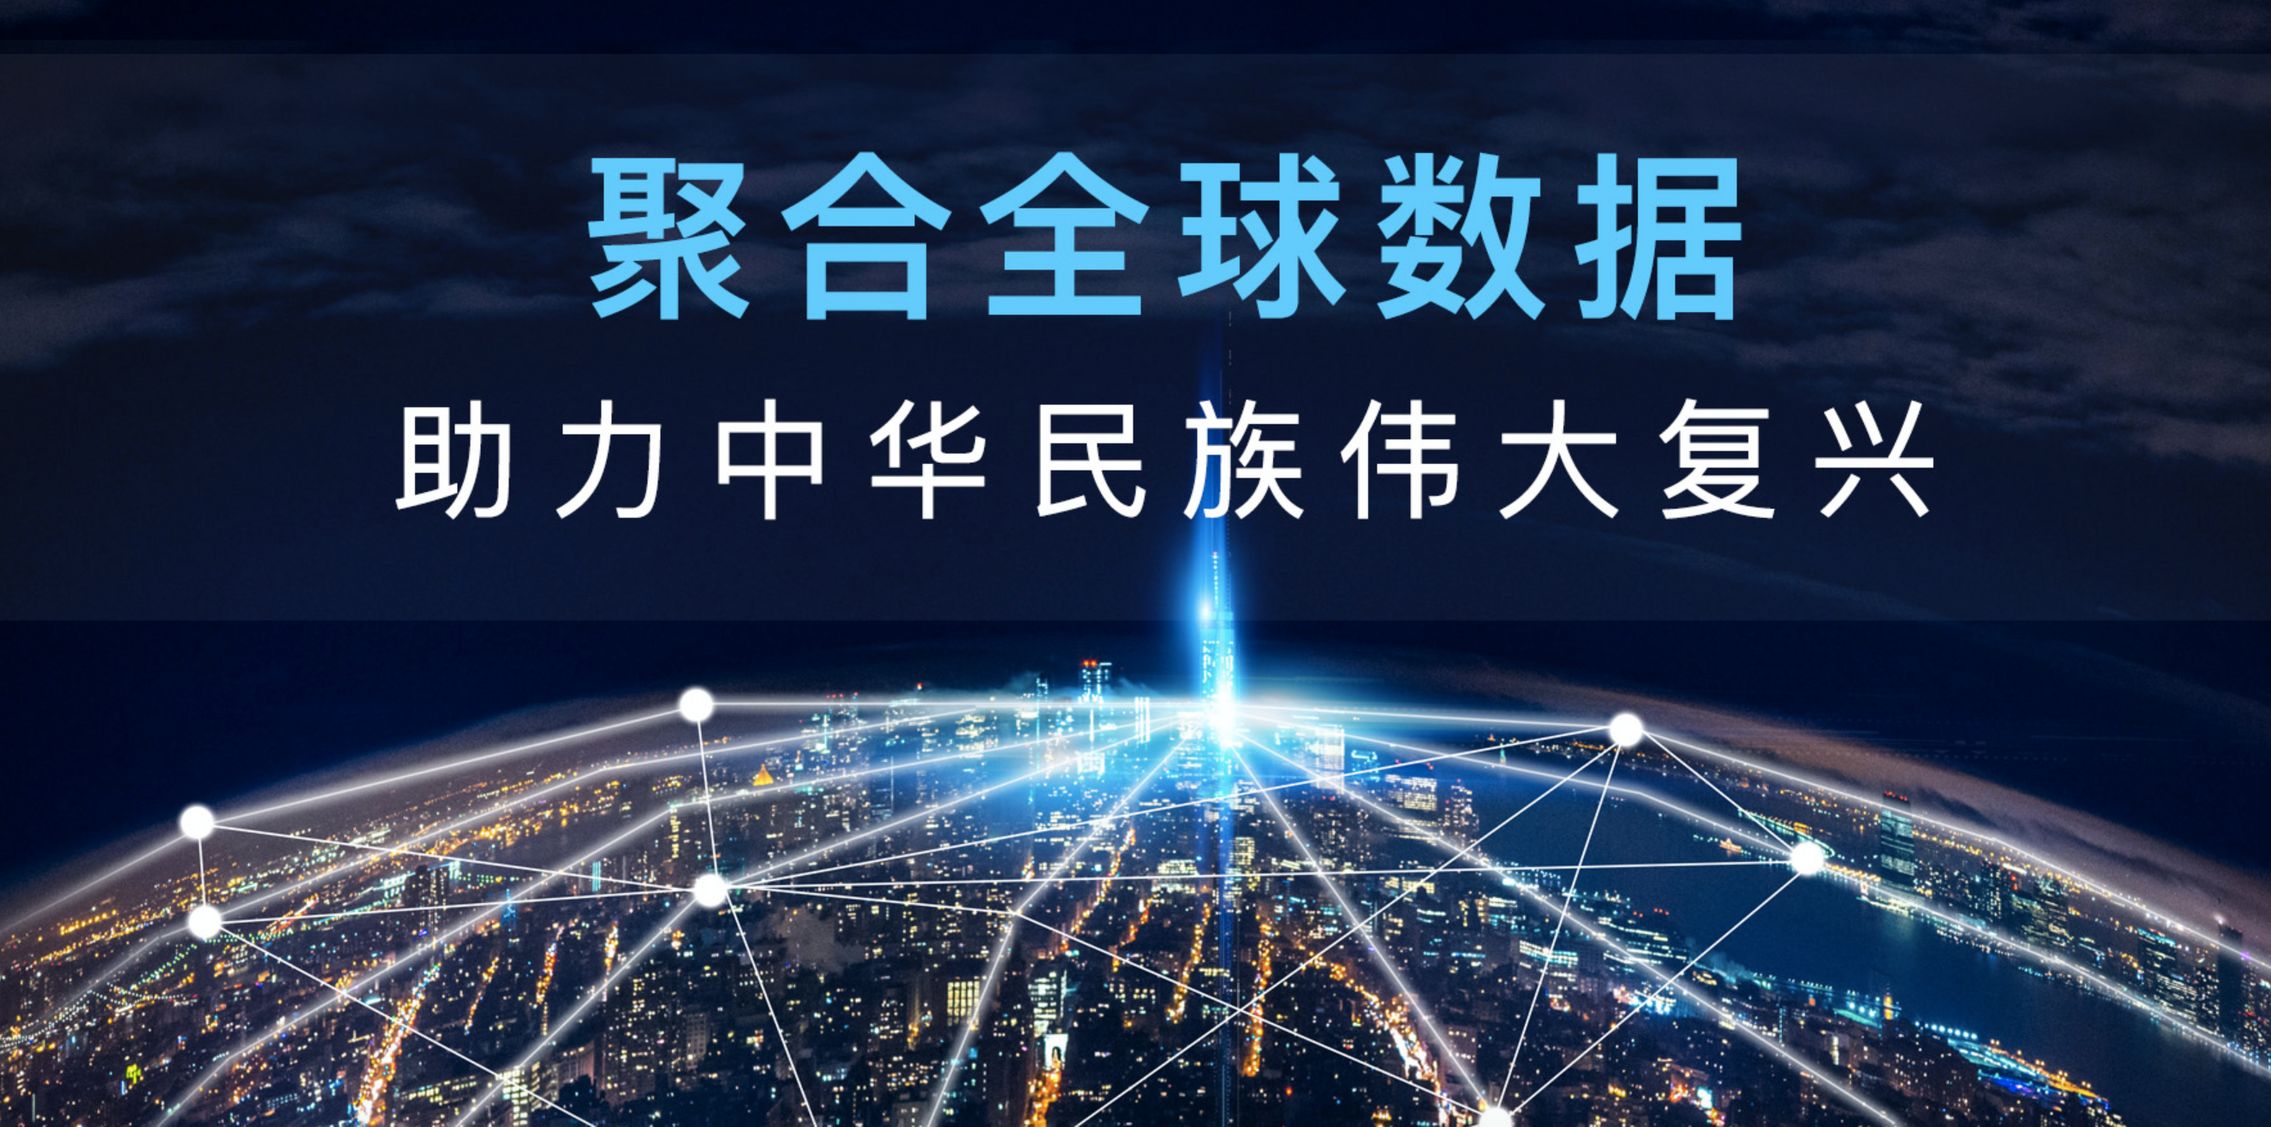 Snímek dnes už vypnutého čínského webu firmy Zhenhua Data Technology, který nabízel osobní data pro hybridní válku proti západu.